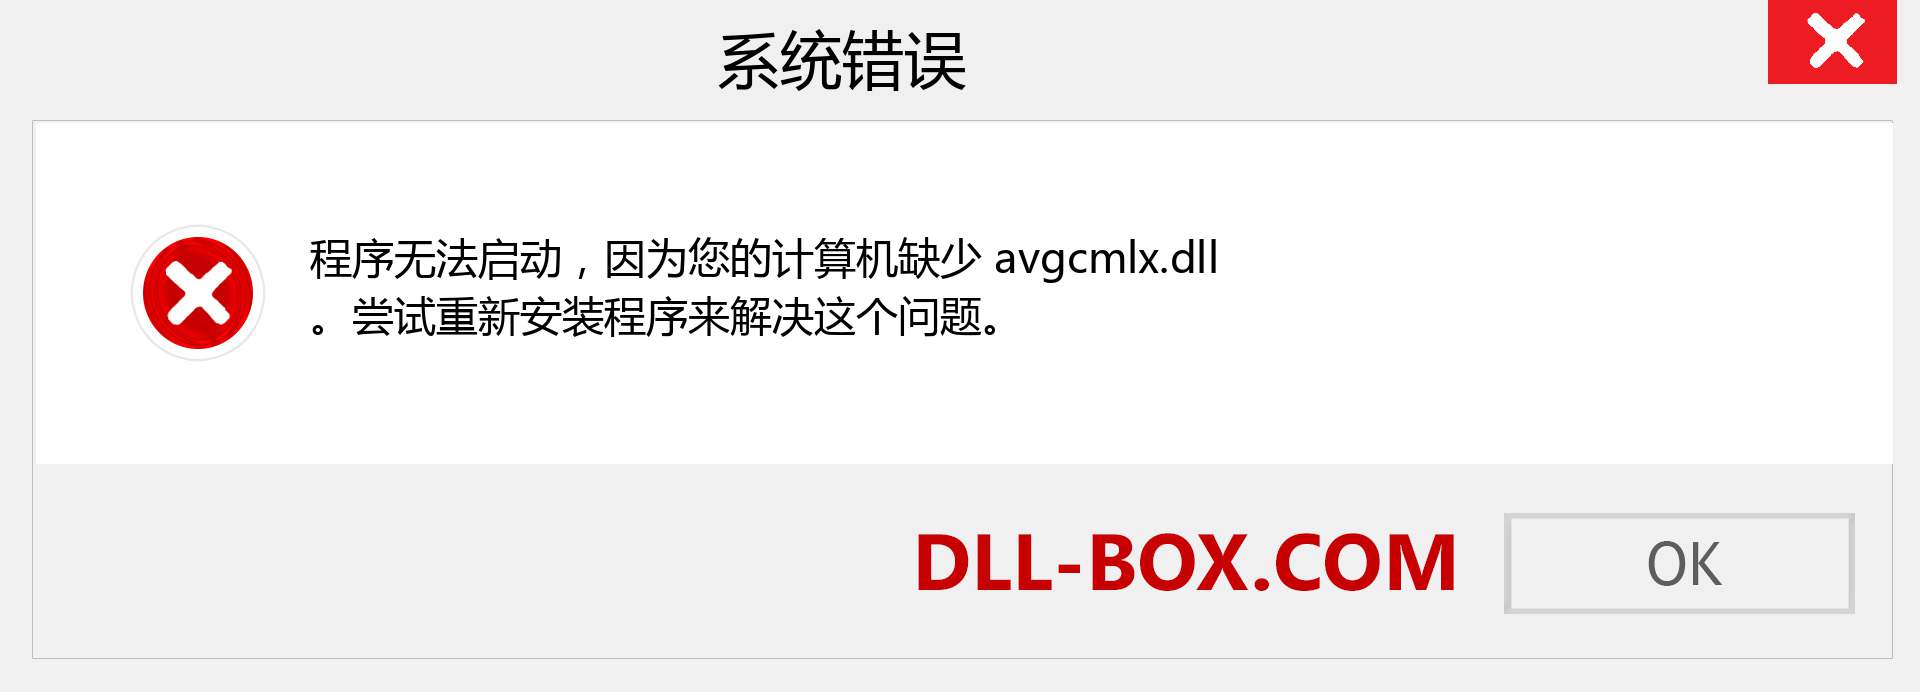 avgcmlx.dll 文件丢失？。 适用于 Windows 7、8、10 的下载 - 修复 Windows、照片、图像上的 avgcmlx dll 丢失错误